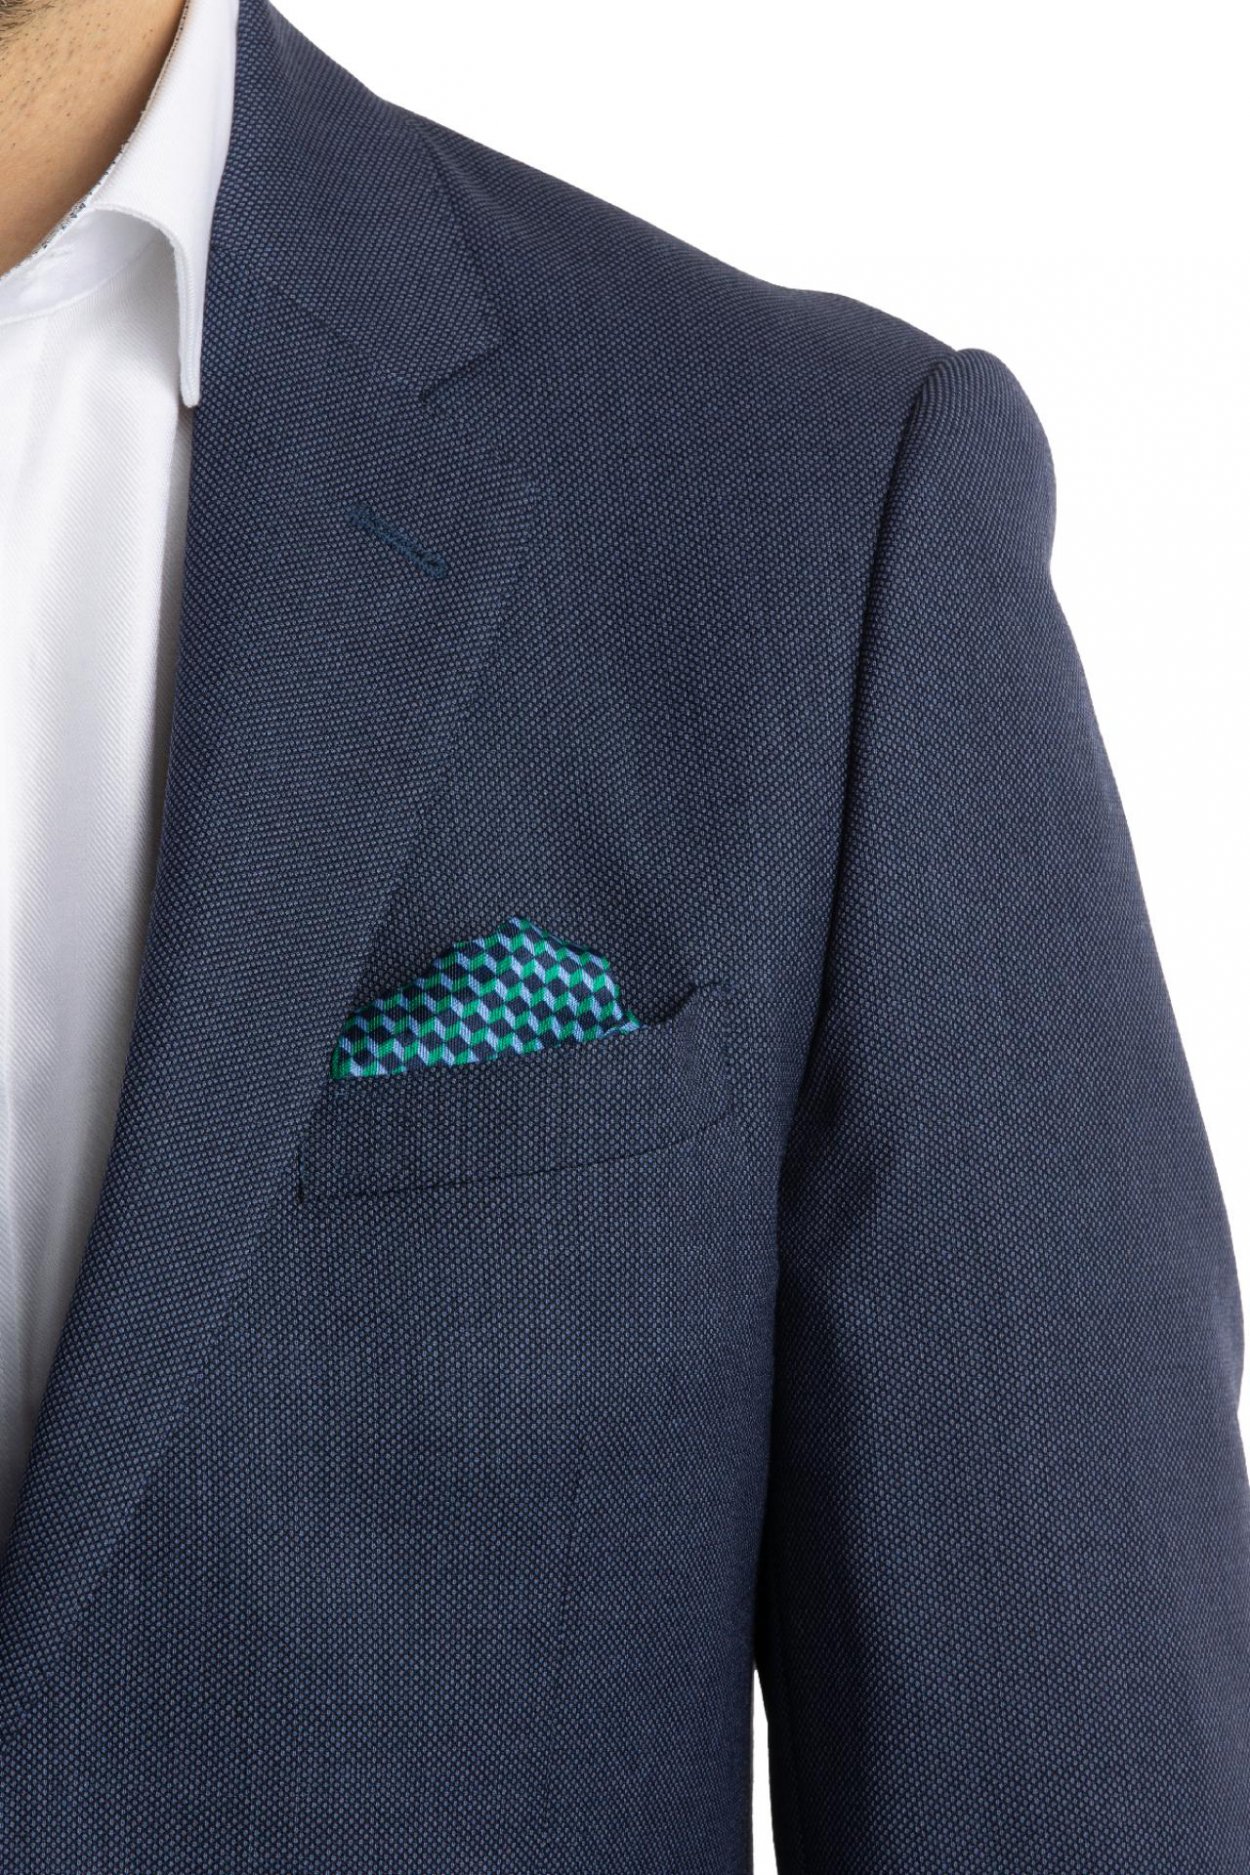 Modrozelený hedvábný kapesníček se vzorem